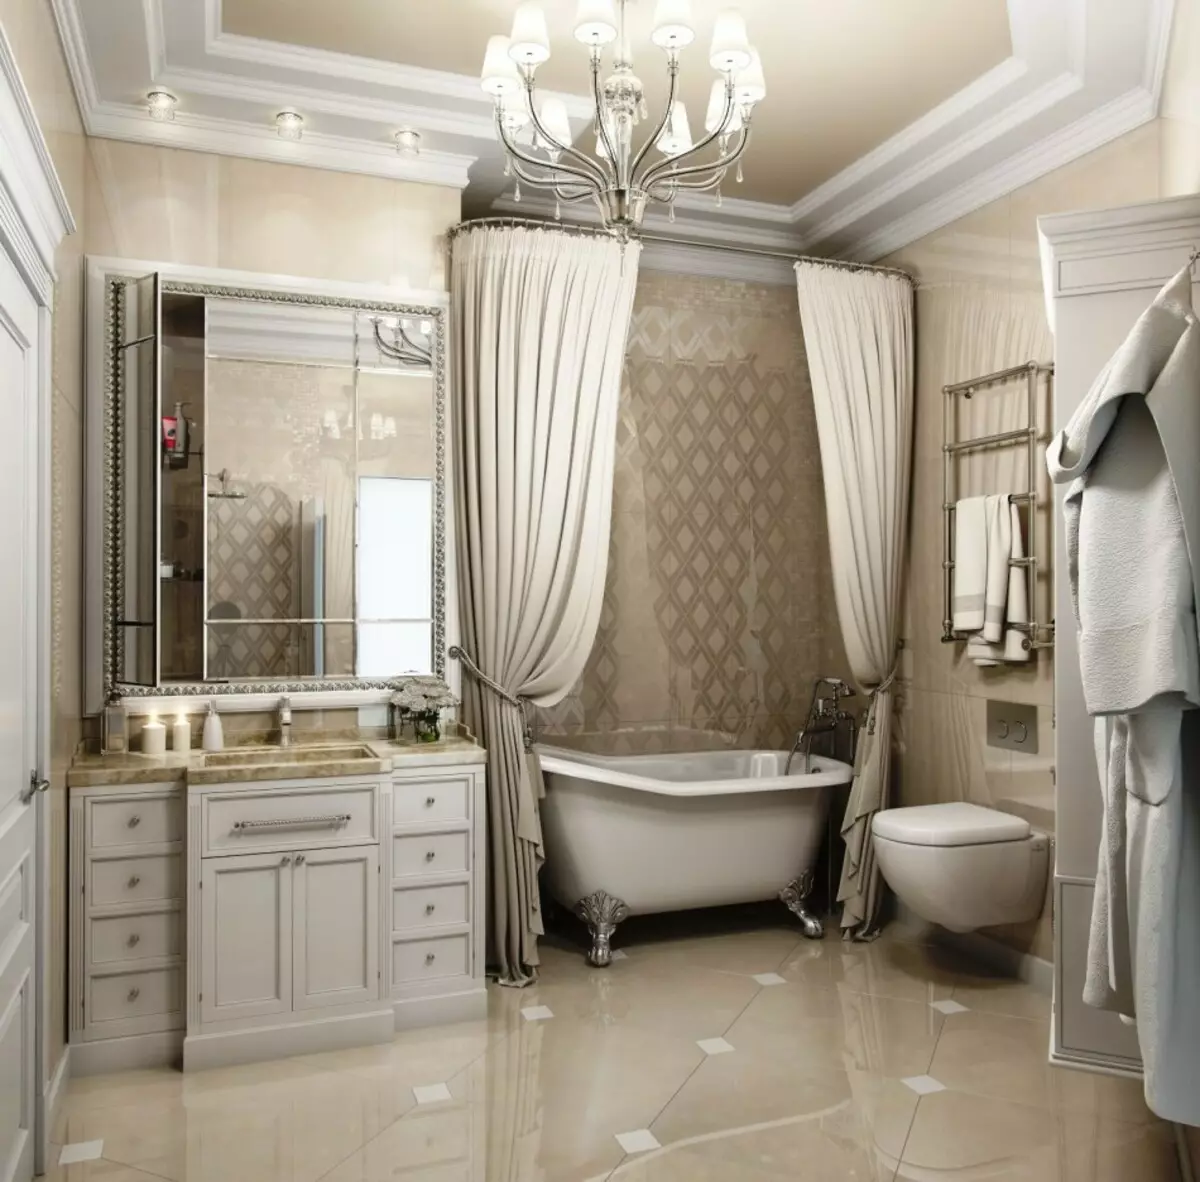 Salle de bain blanche (84 photos): design de chambre dans des tons blancs avec des accents lumineux. Idées de design d'intérieur modernes Petite salle de bain blanche avec inserts 10191_68